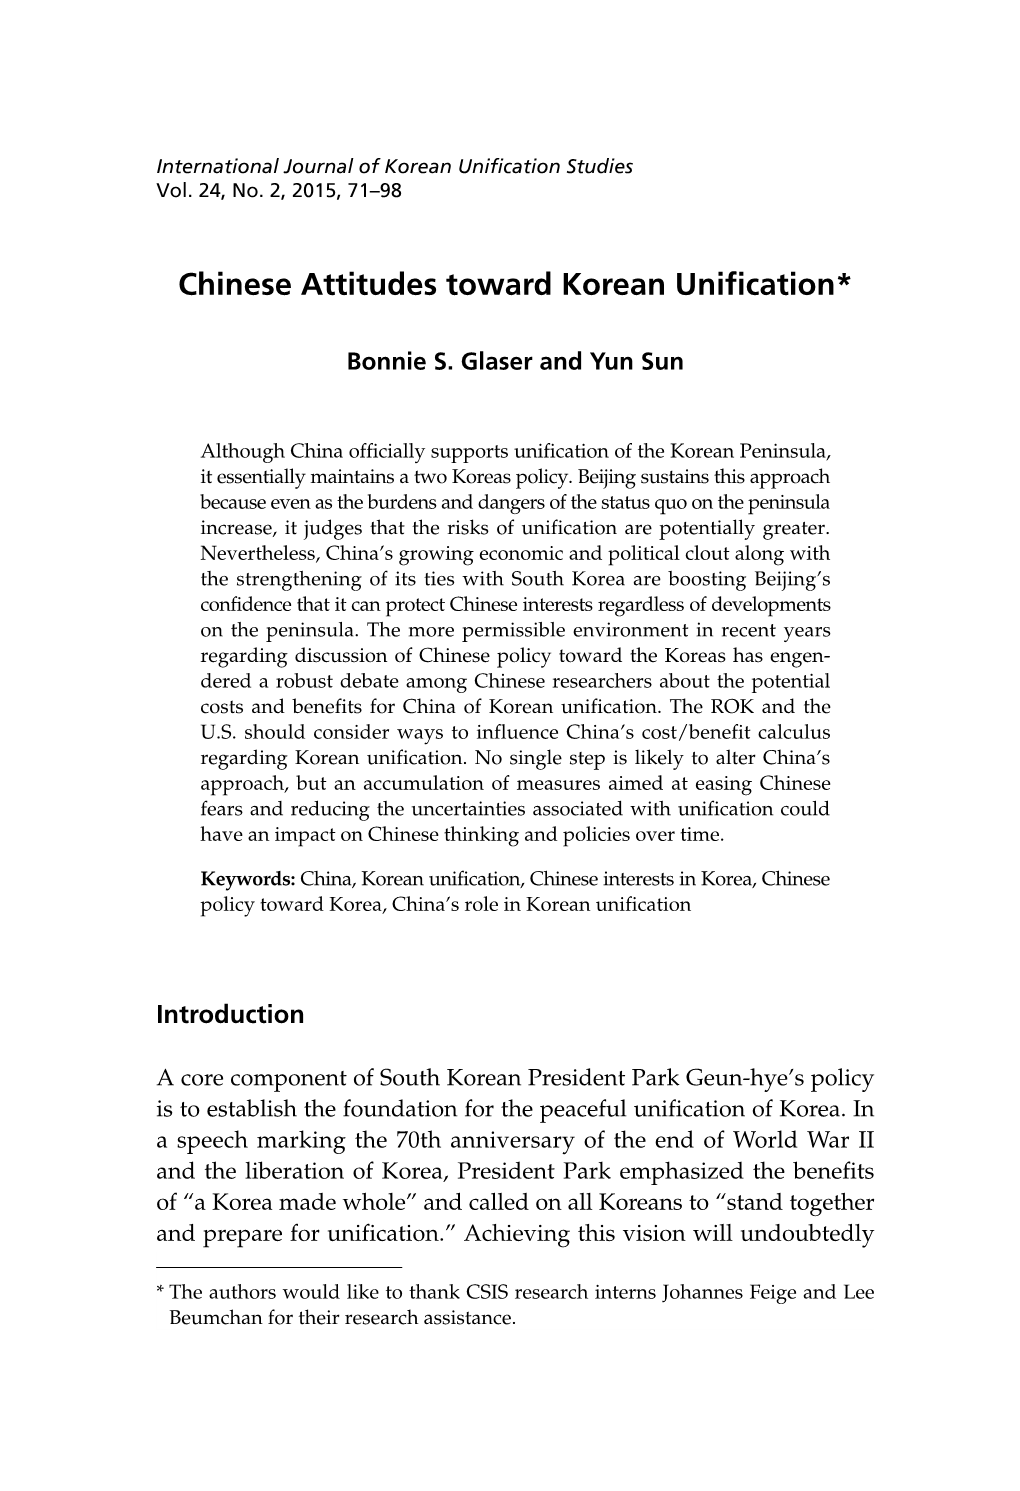 Chinese Attitudes Toward Korean Unification*